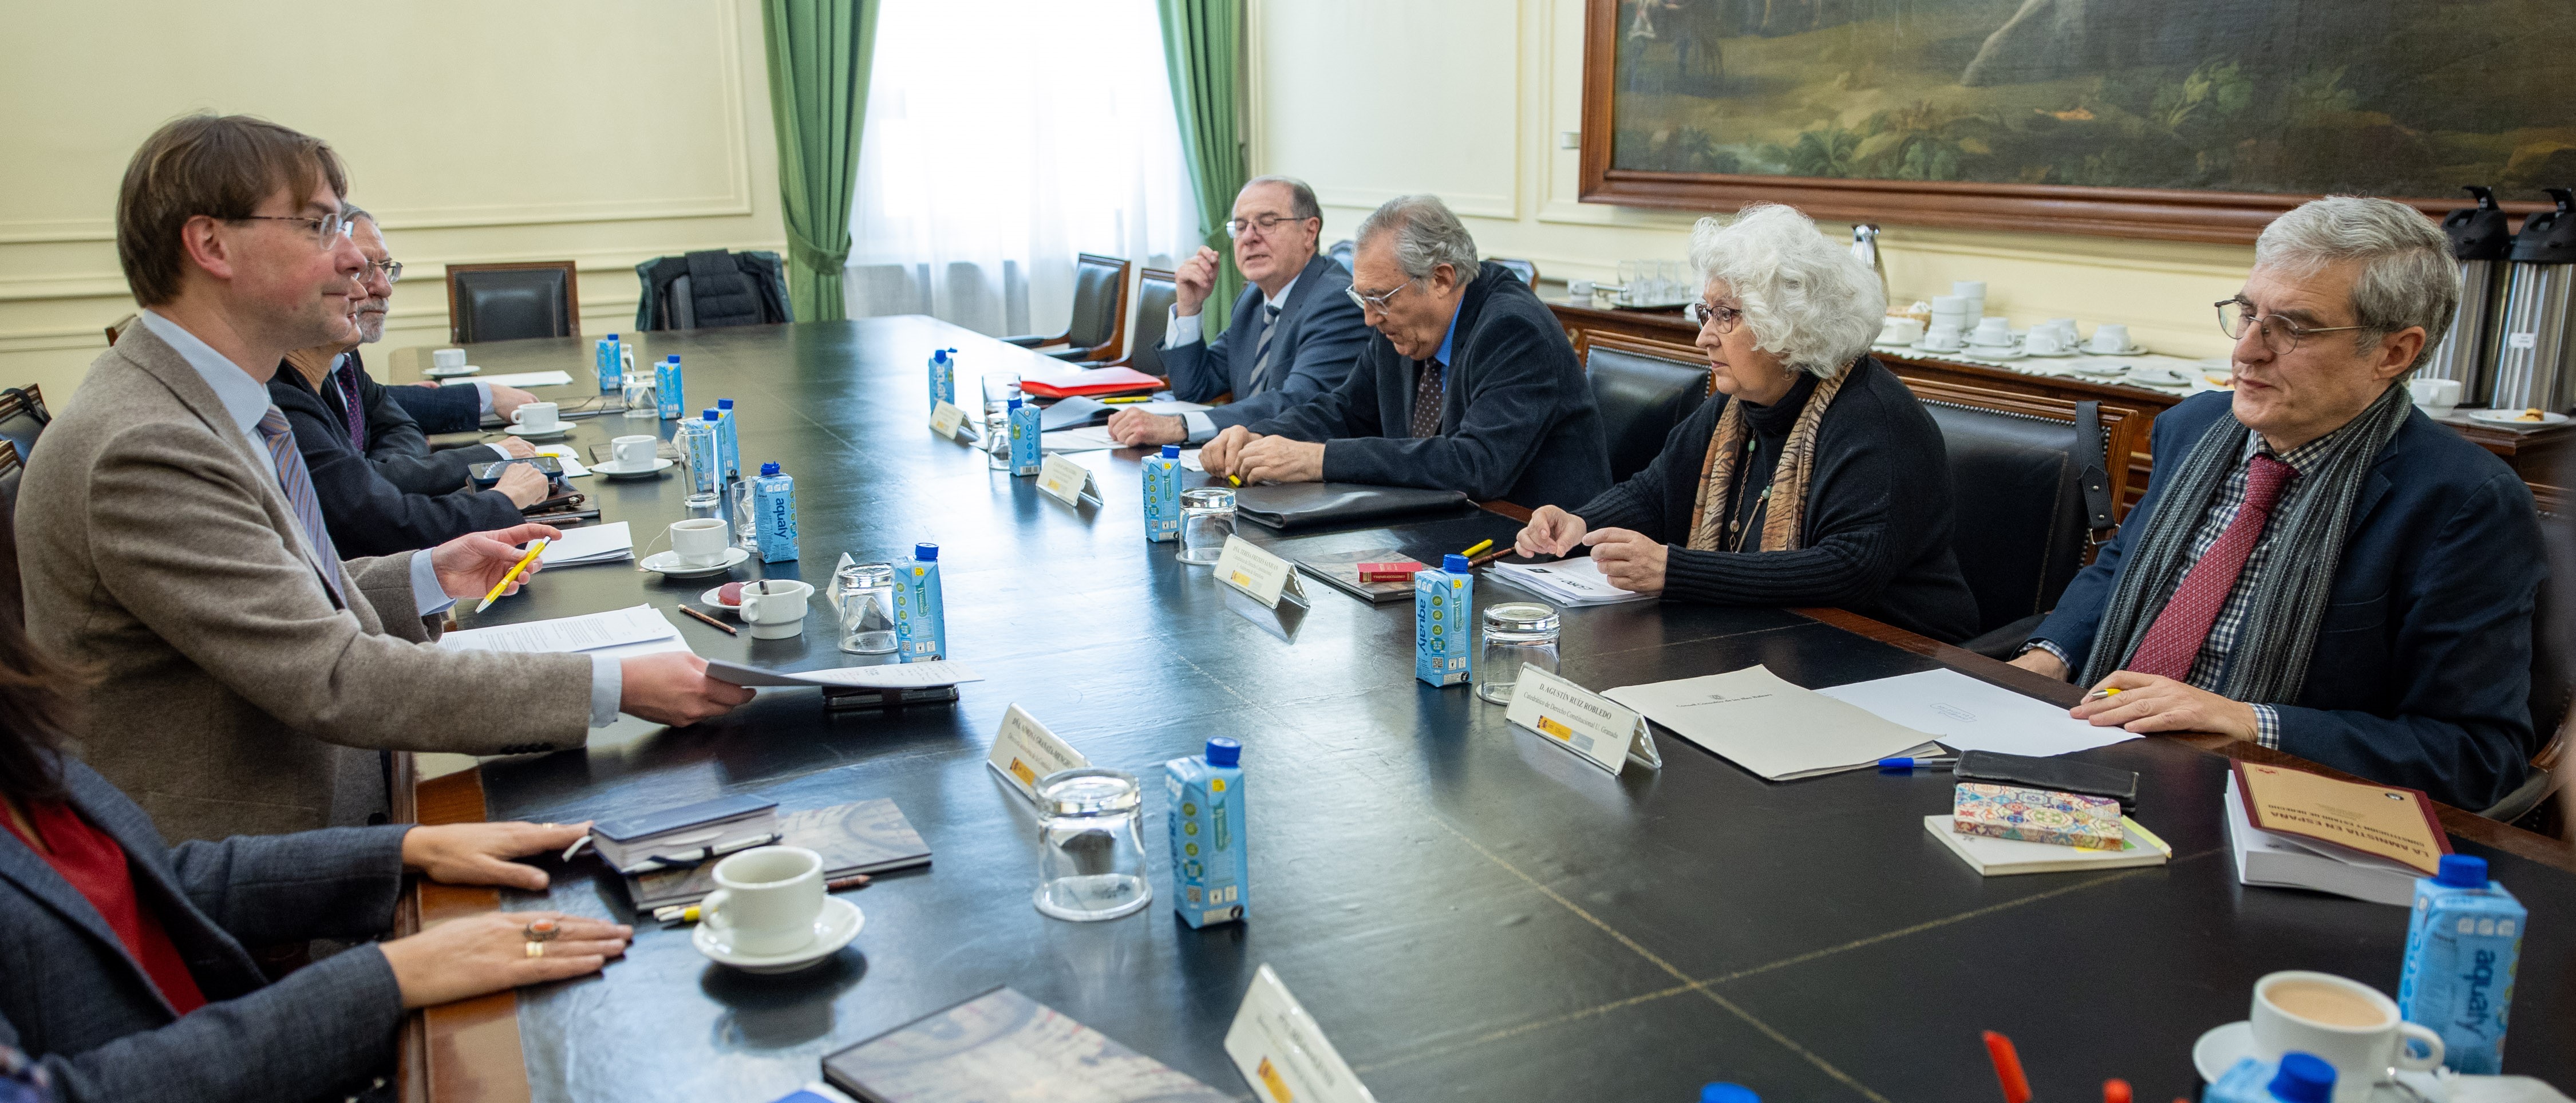  La Comisión de Venecia se reúne en el CEPC con expertos constitucionalistas